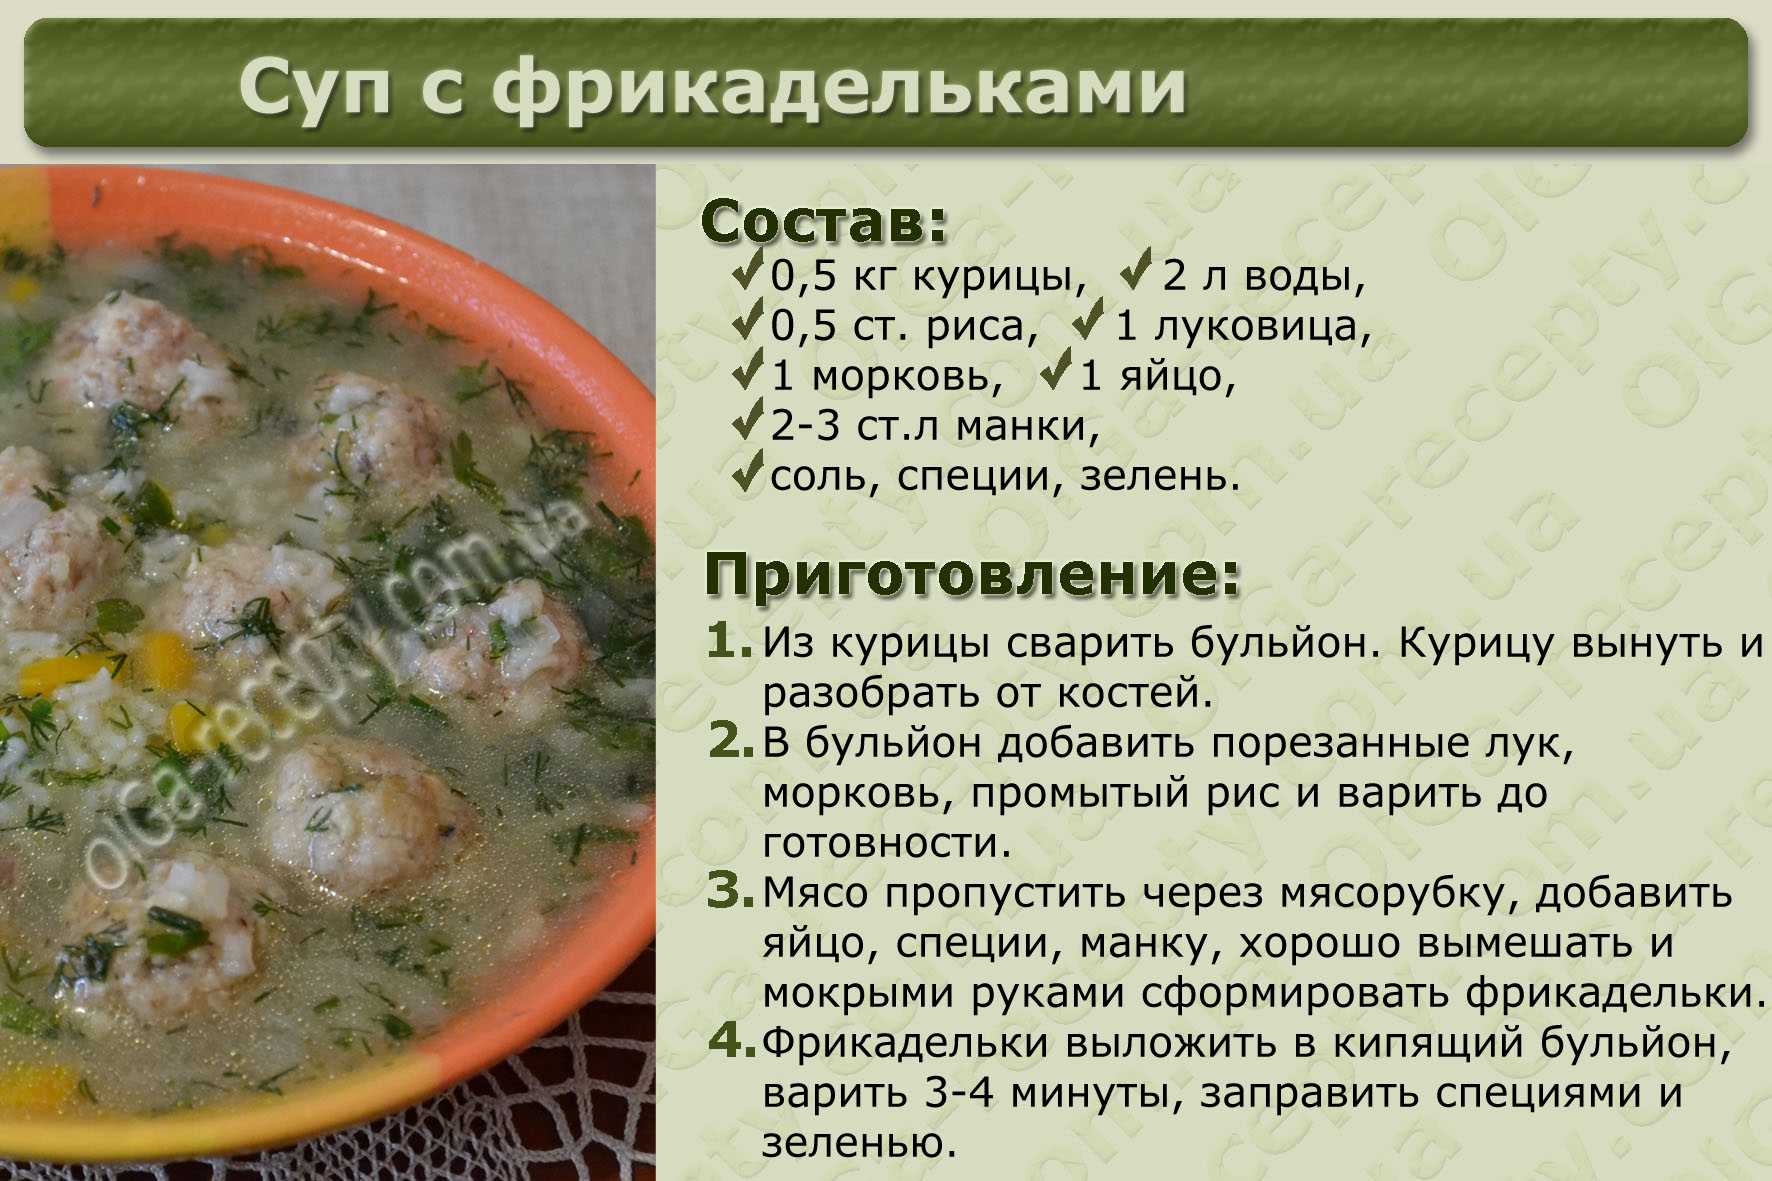 Покажи рецепты. Рецепт приготовления супа. Разные супы рецепты. Рецепты супов с описанием. Рецепты блюд в картинках с описанием.